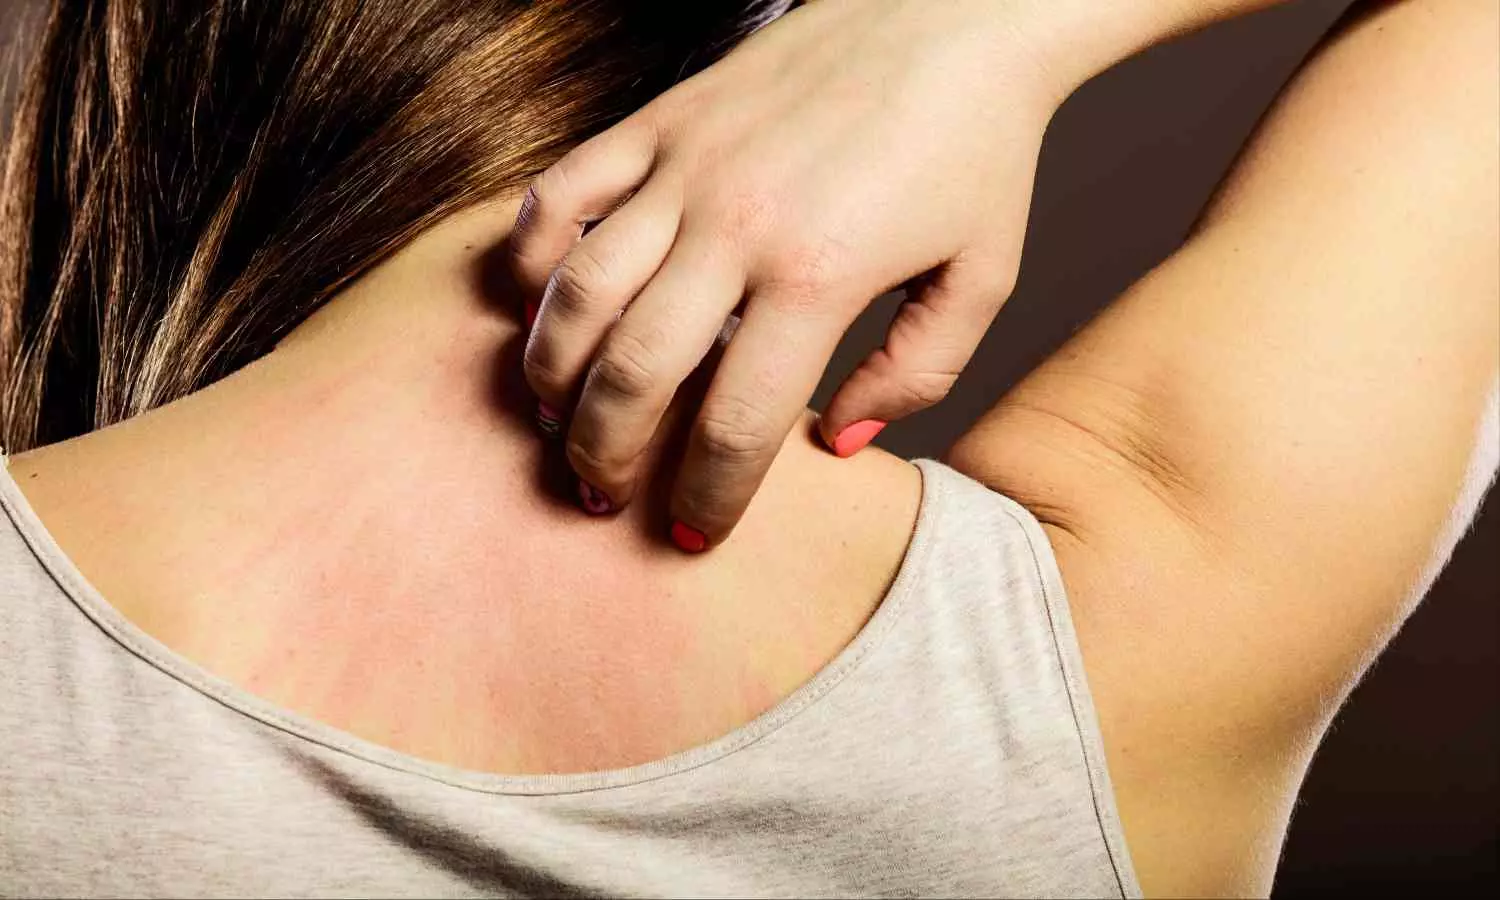 Skin Rashes: इन 4 कारणों से होते हैं स्किन रैशेज और चकते, छुटकारा पाने के लिए आजमाएं ये उपाय